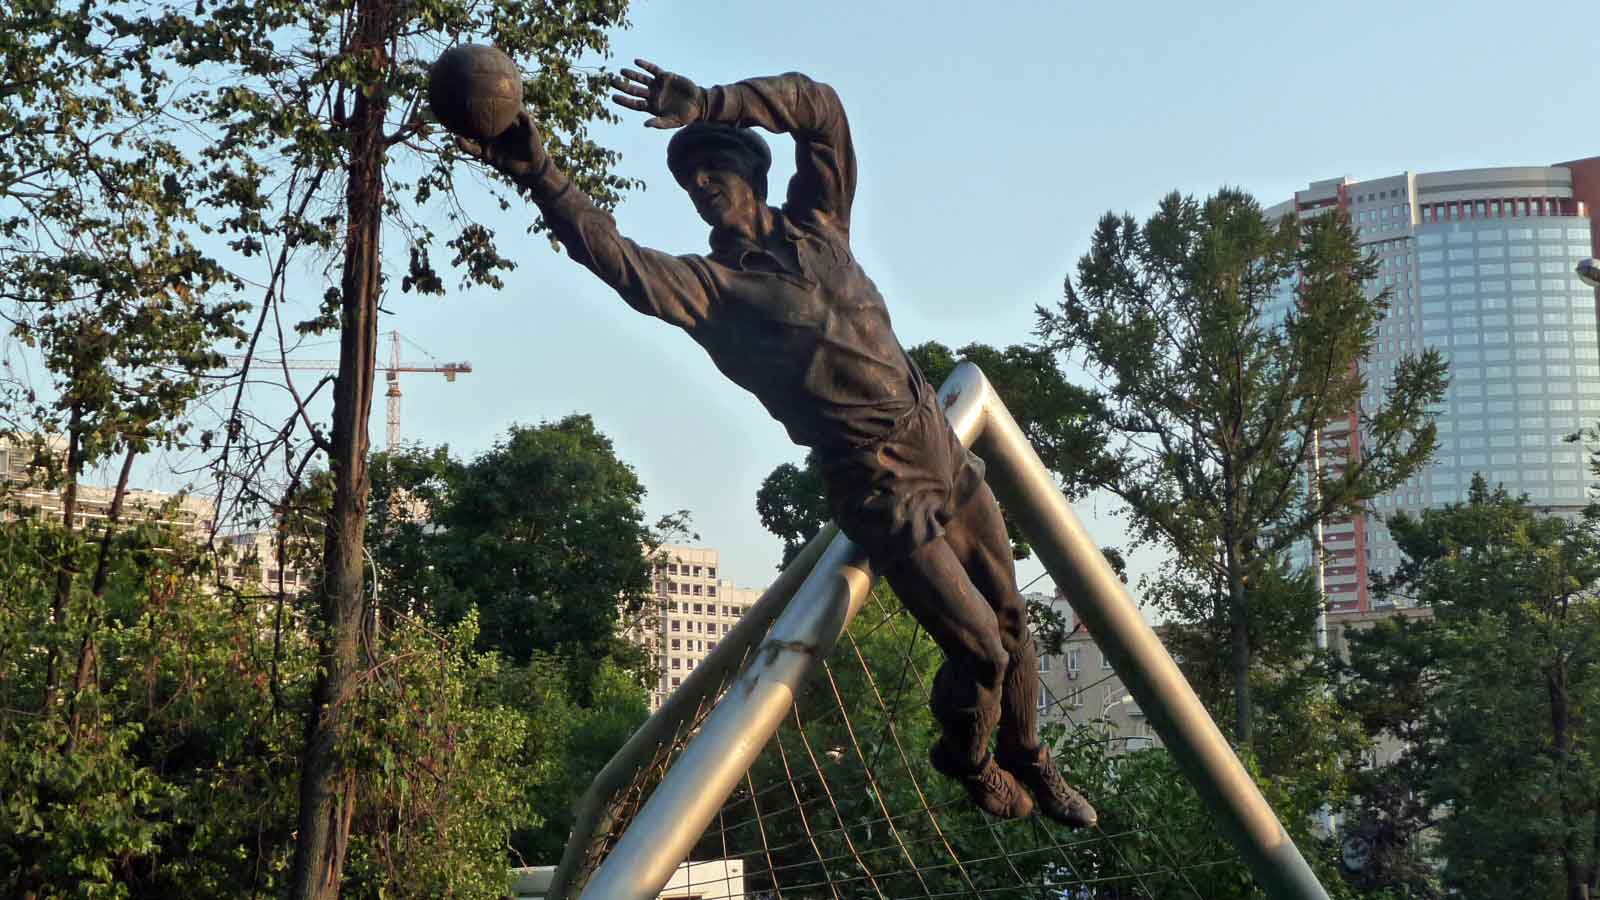 אנדרטה לזכרו של לב יאשין מחוץ לאצטדיון &quot;דינמו&quot; במוסקבה (צילום: Asetta / Shutterstock.com)